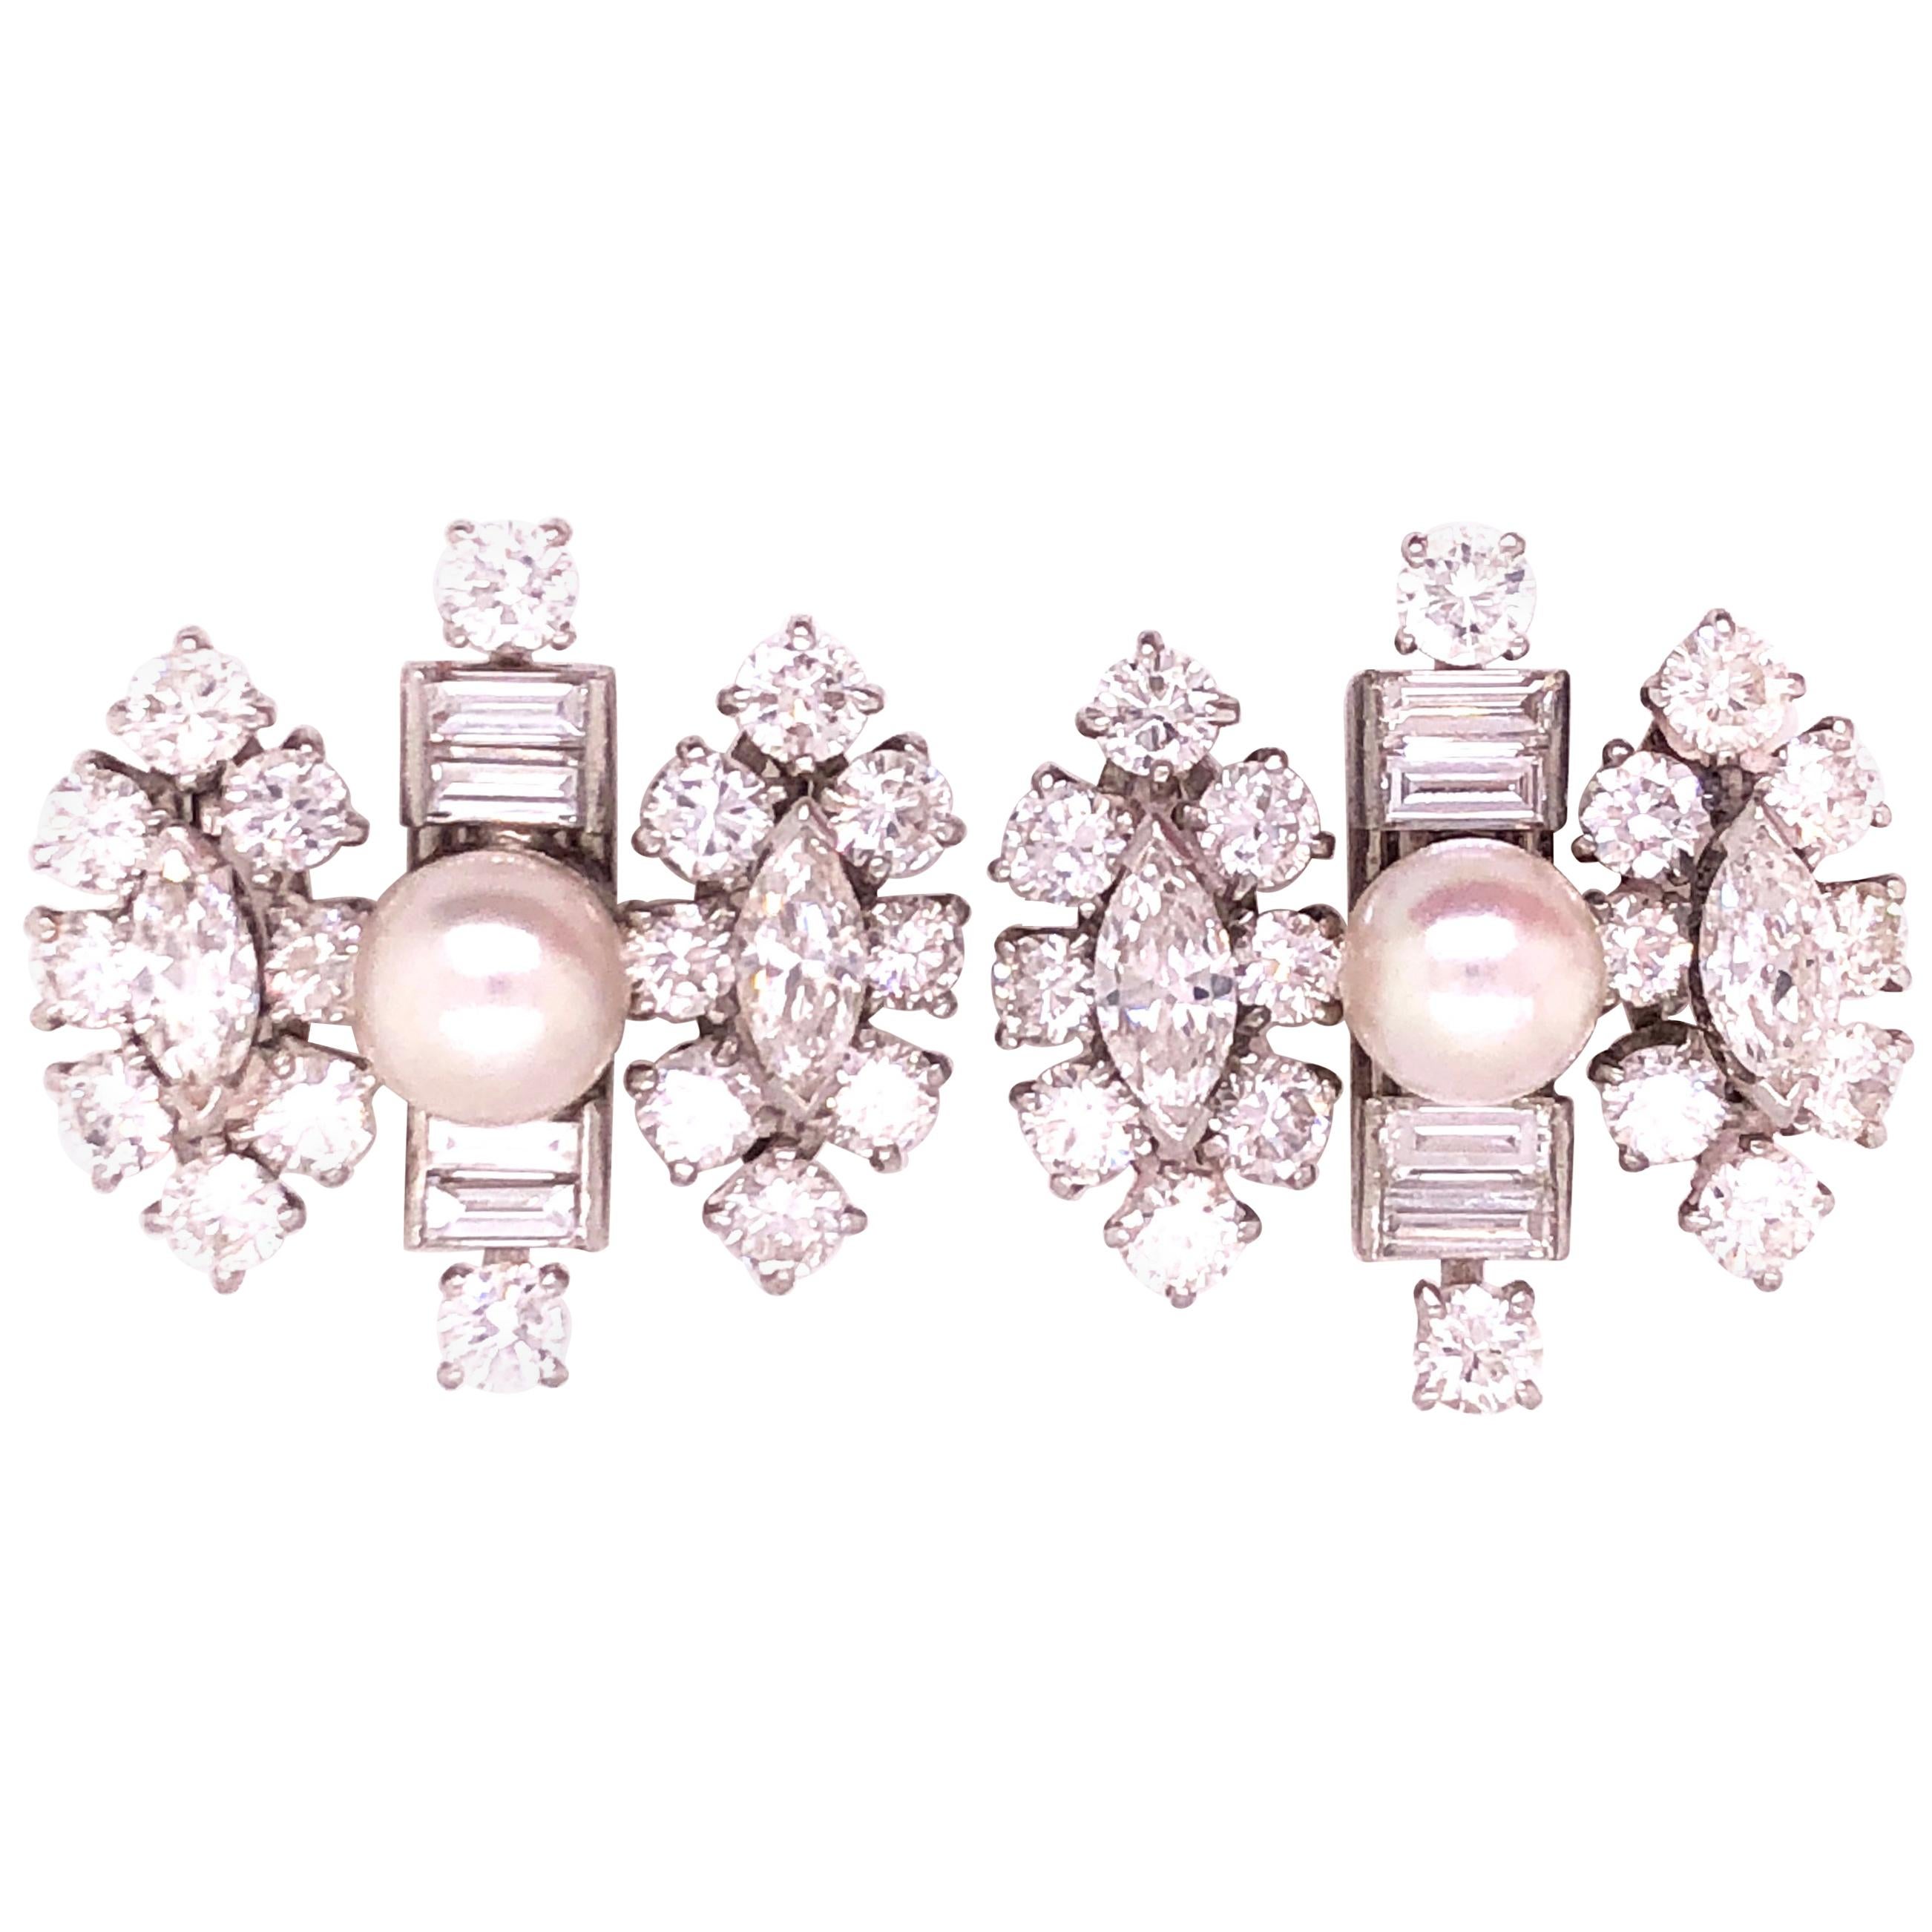 18 Karat White Gold Fancy Diamond Earrings with Pearl